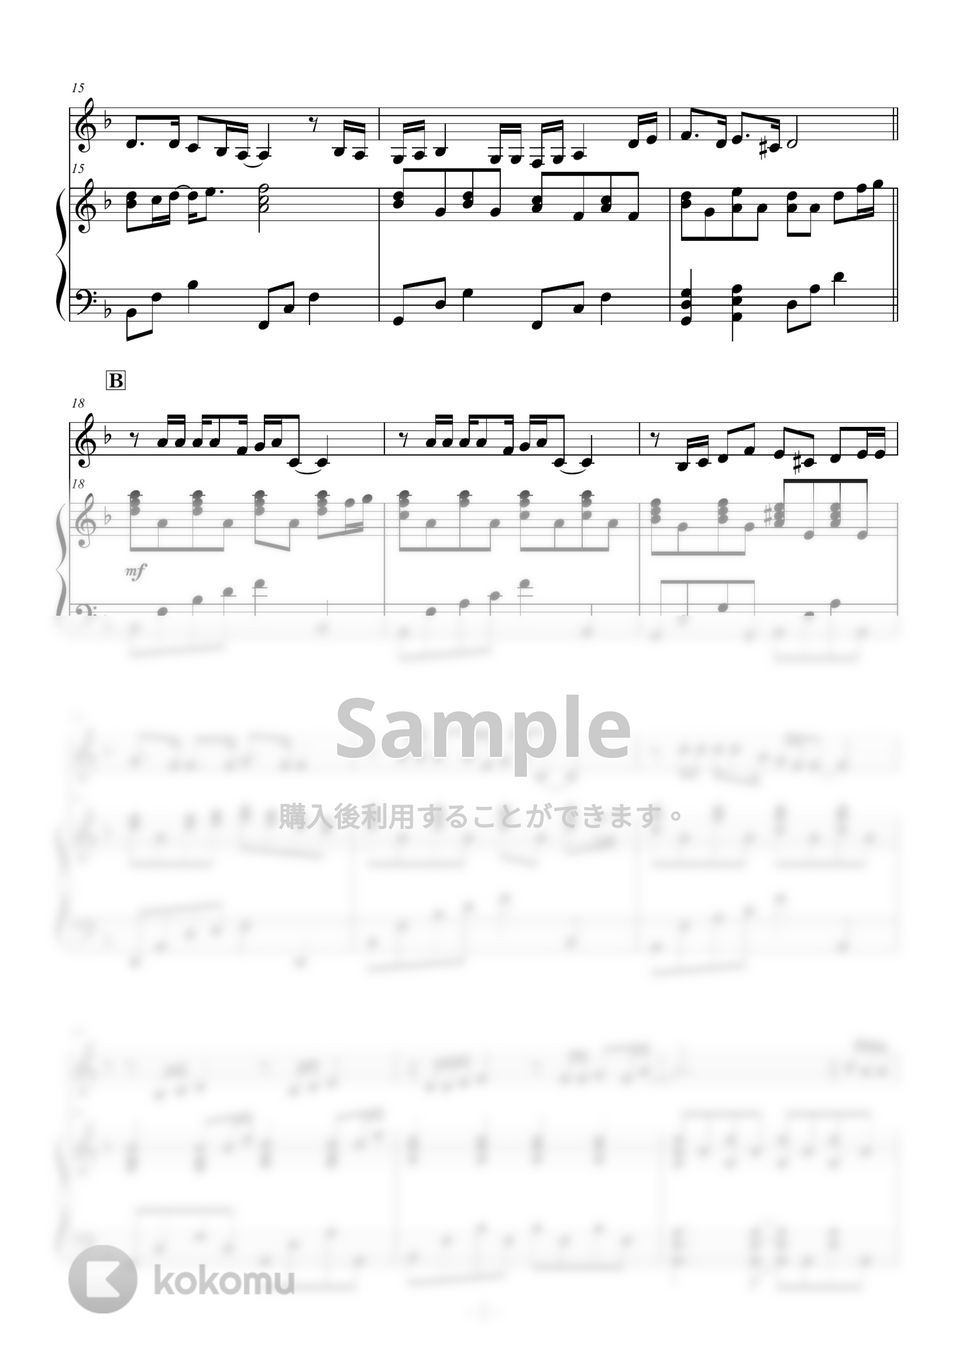 いきものがかり - YELL (ピアノ伴奏) by ABIA Music